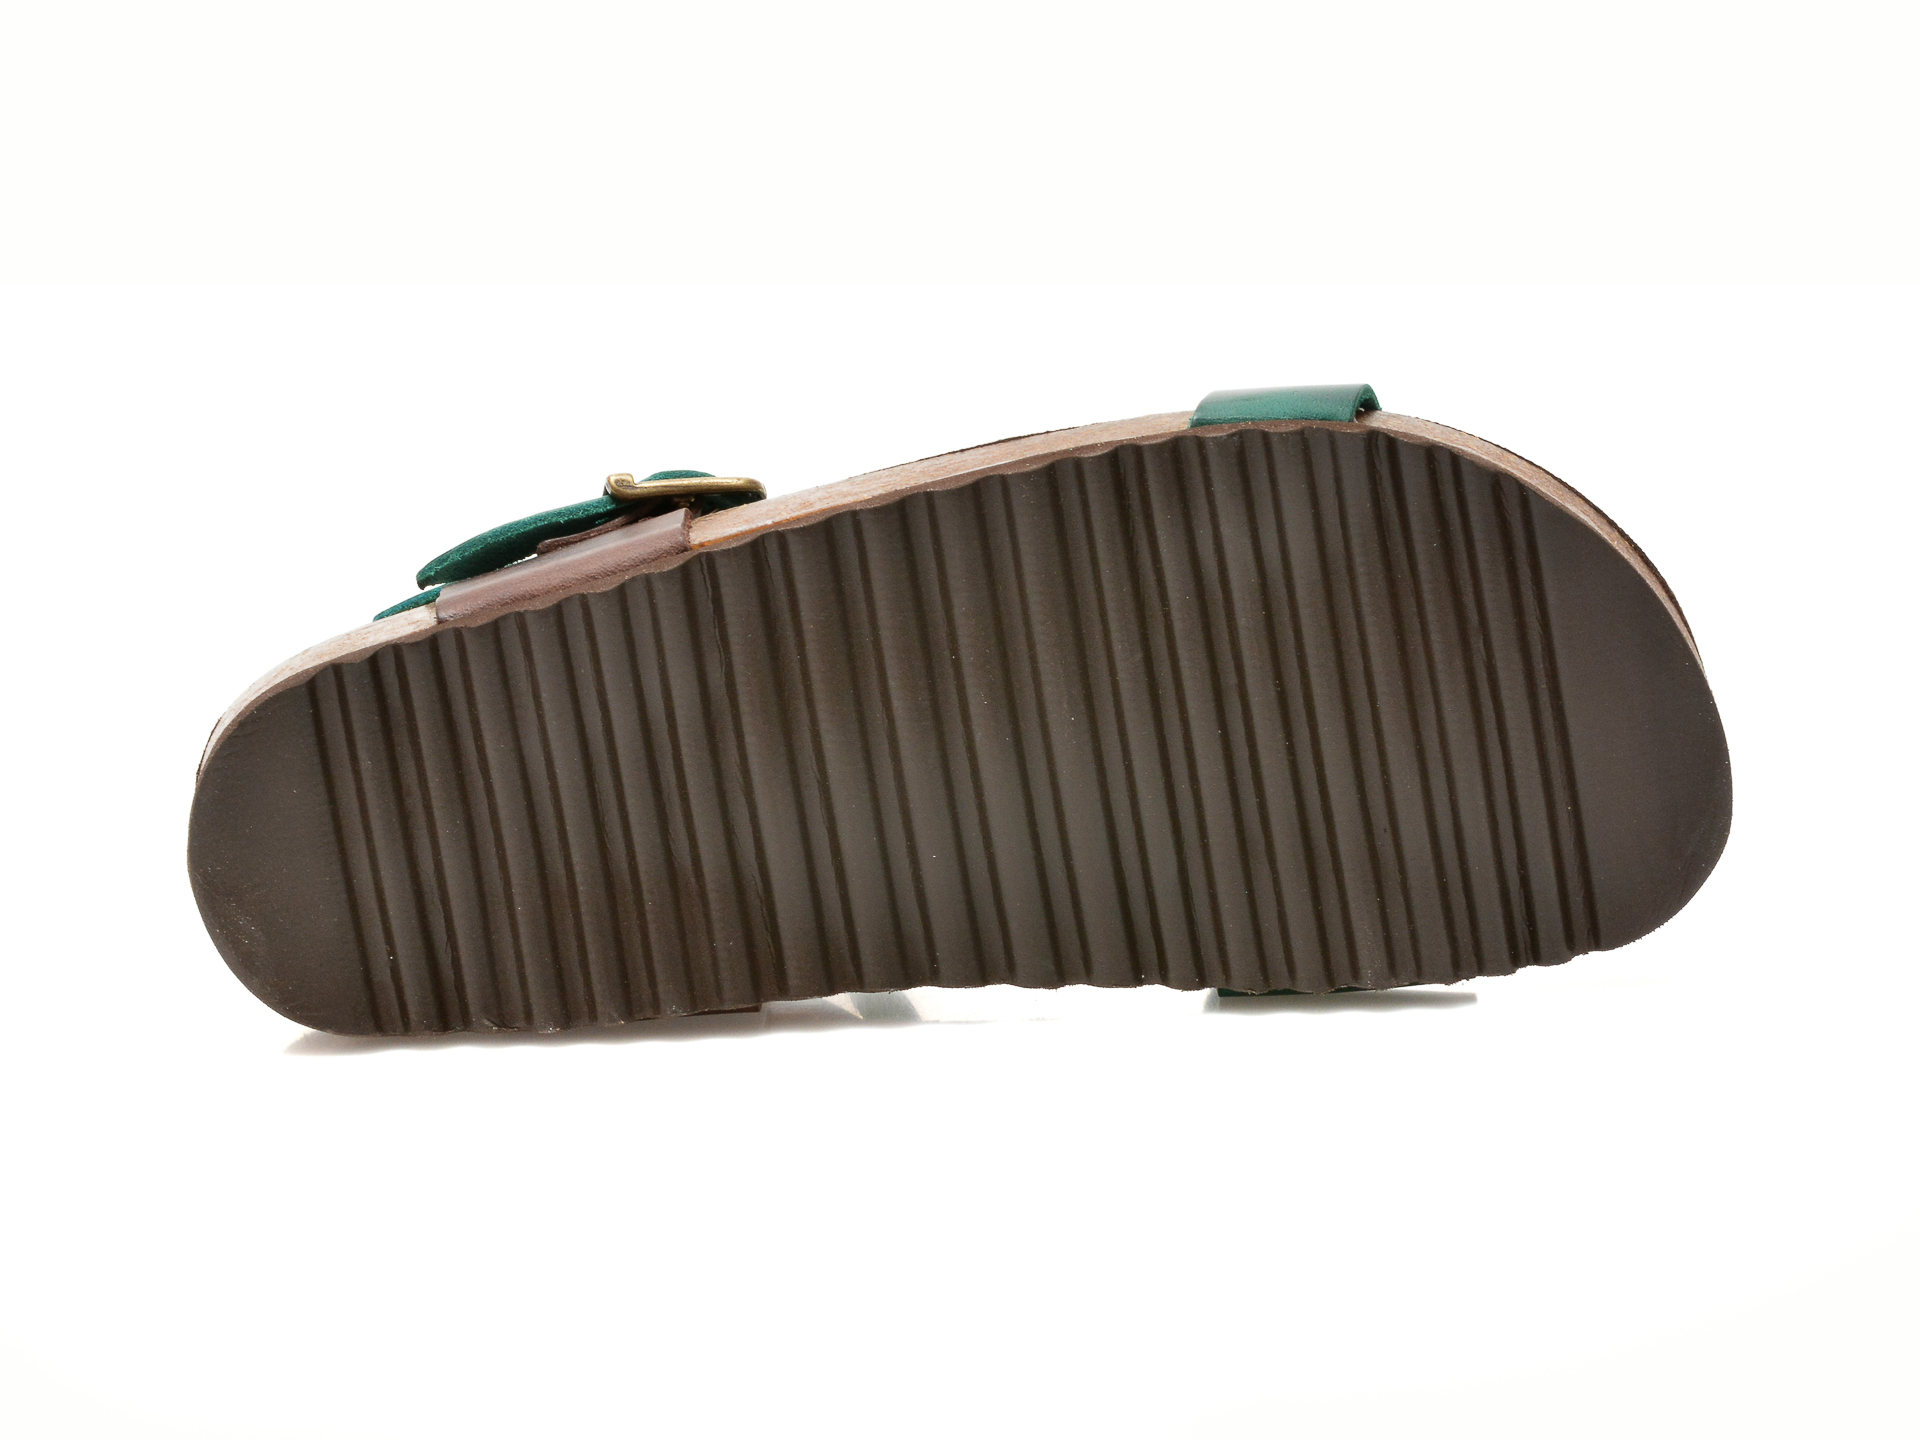 Poze Sandale FLAVIA PASSINI verzi, 70030, din piele naturala otter.ro